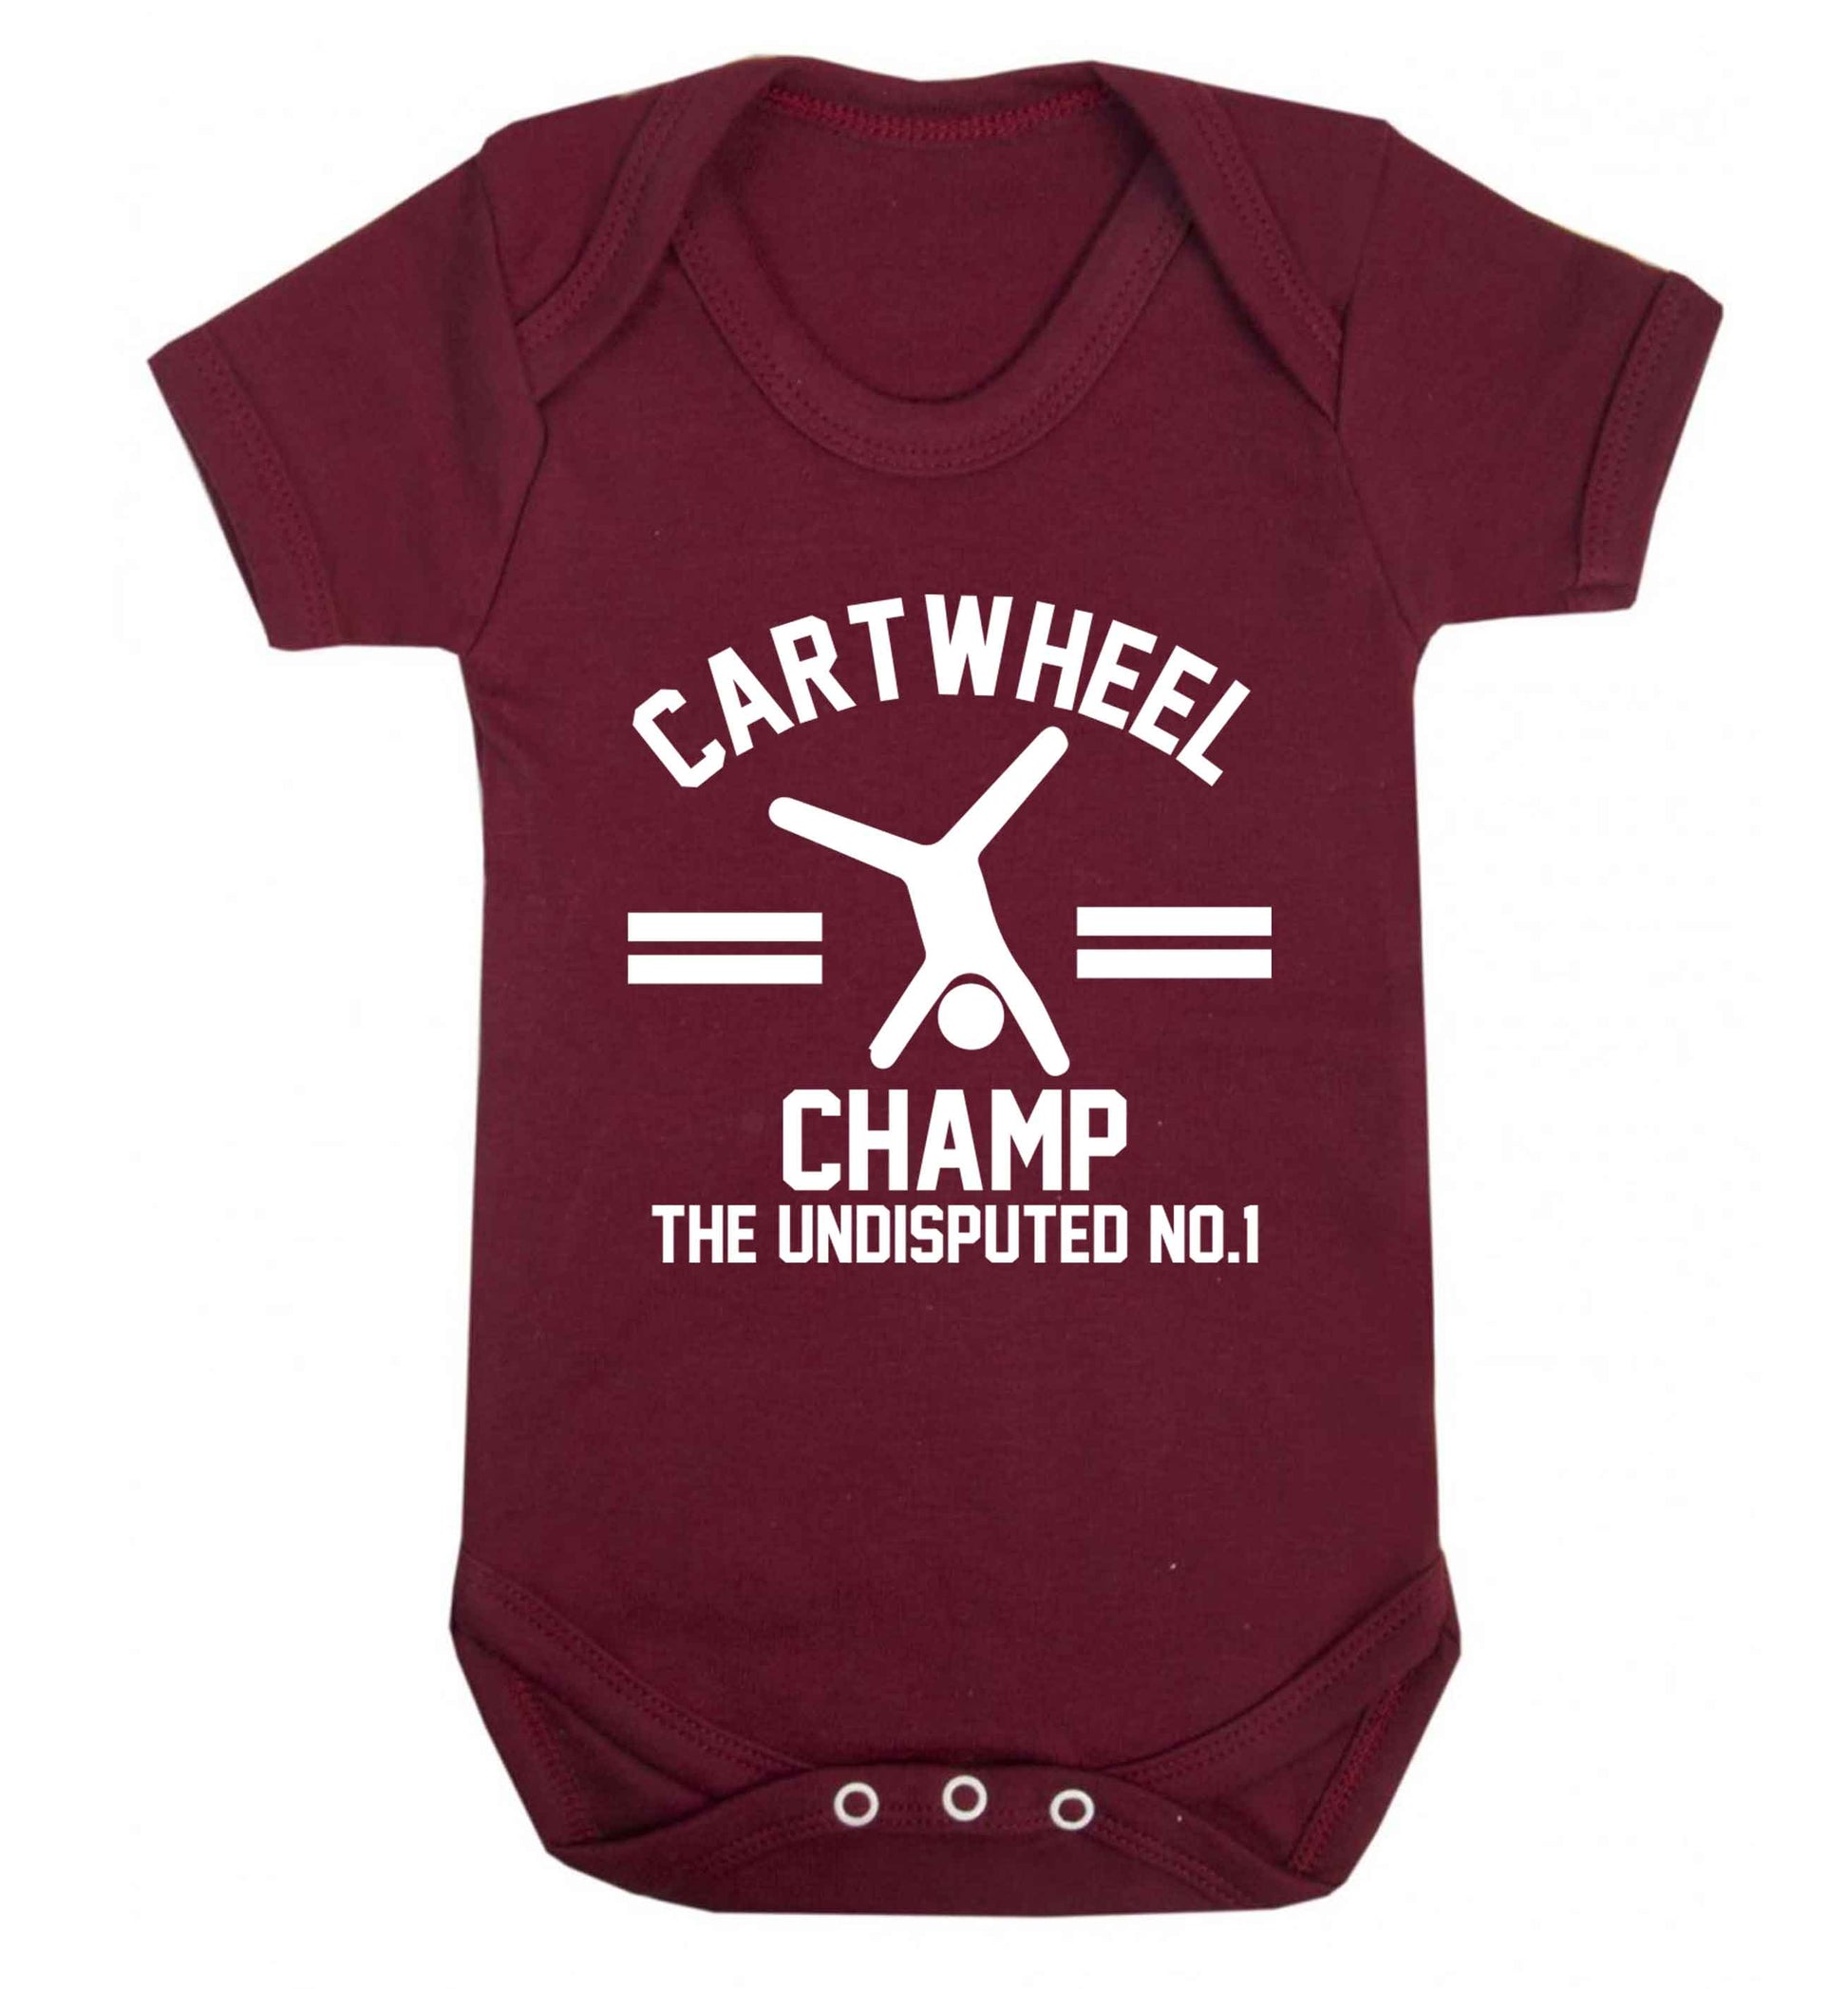 Undisputed cartwheel championship no.1  Baby Vest maroon 18-24 months